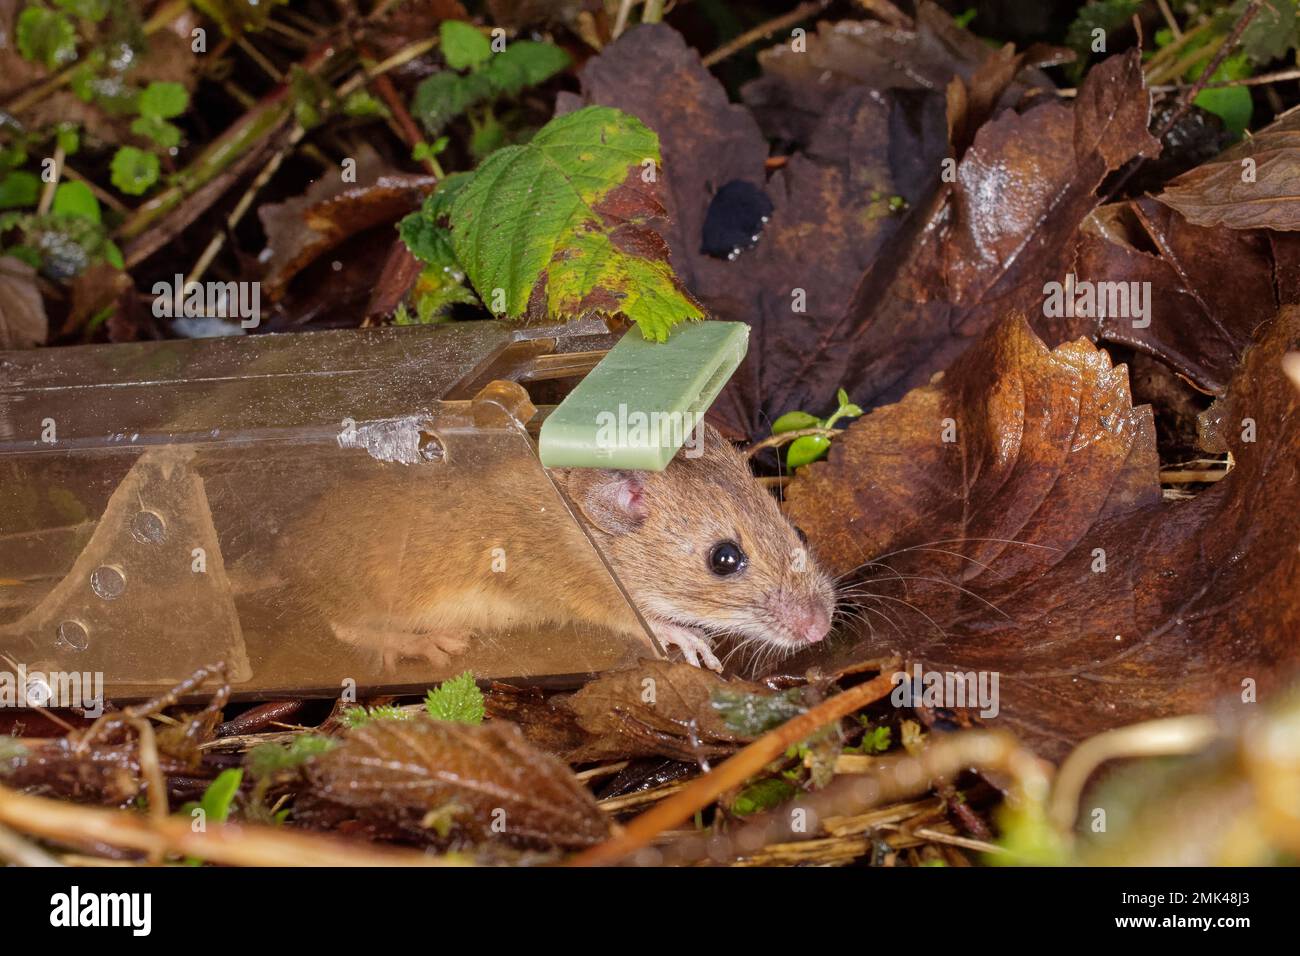 Ratón de campo de cola larga / ratón de madera (Apodemus sylvaticus) siendo liberado en un erizo de una trampa humana después de ser atrapado en una casa, Wiltshire, U Foto de stock